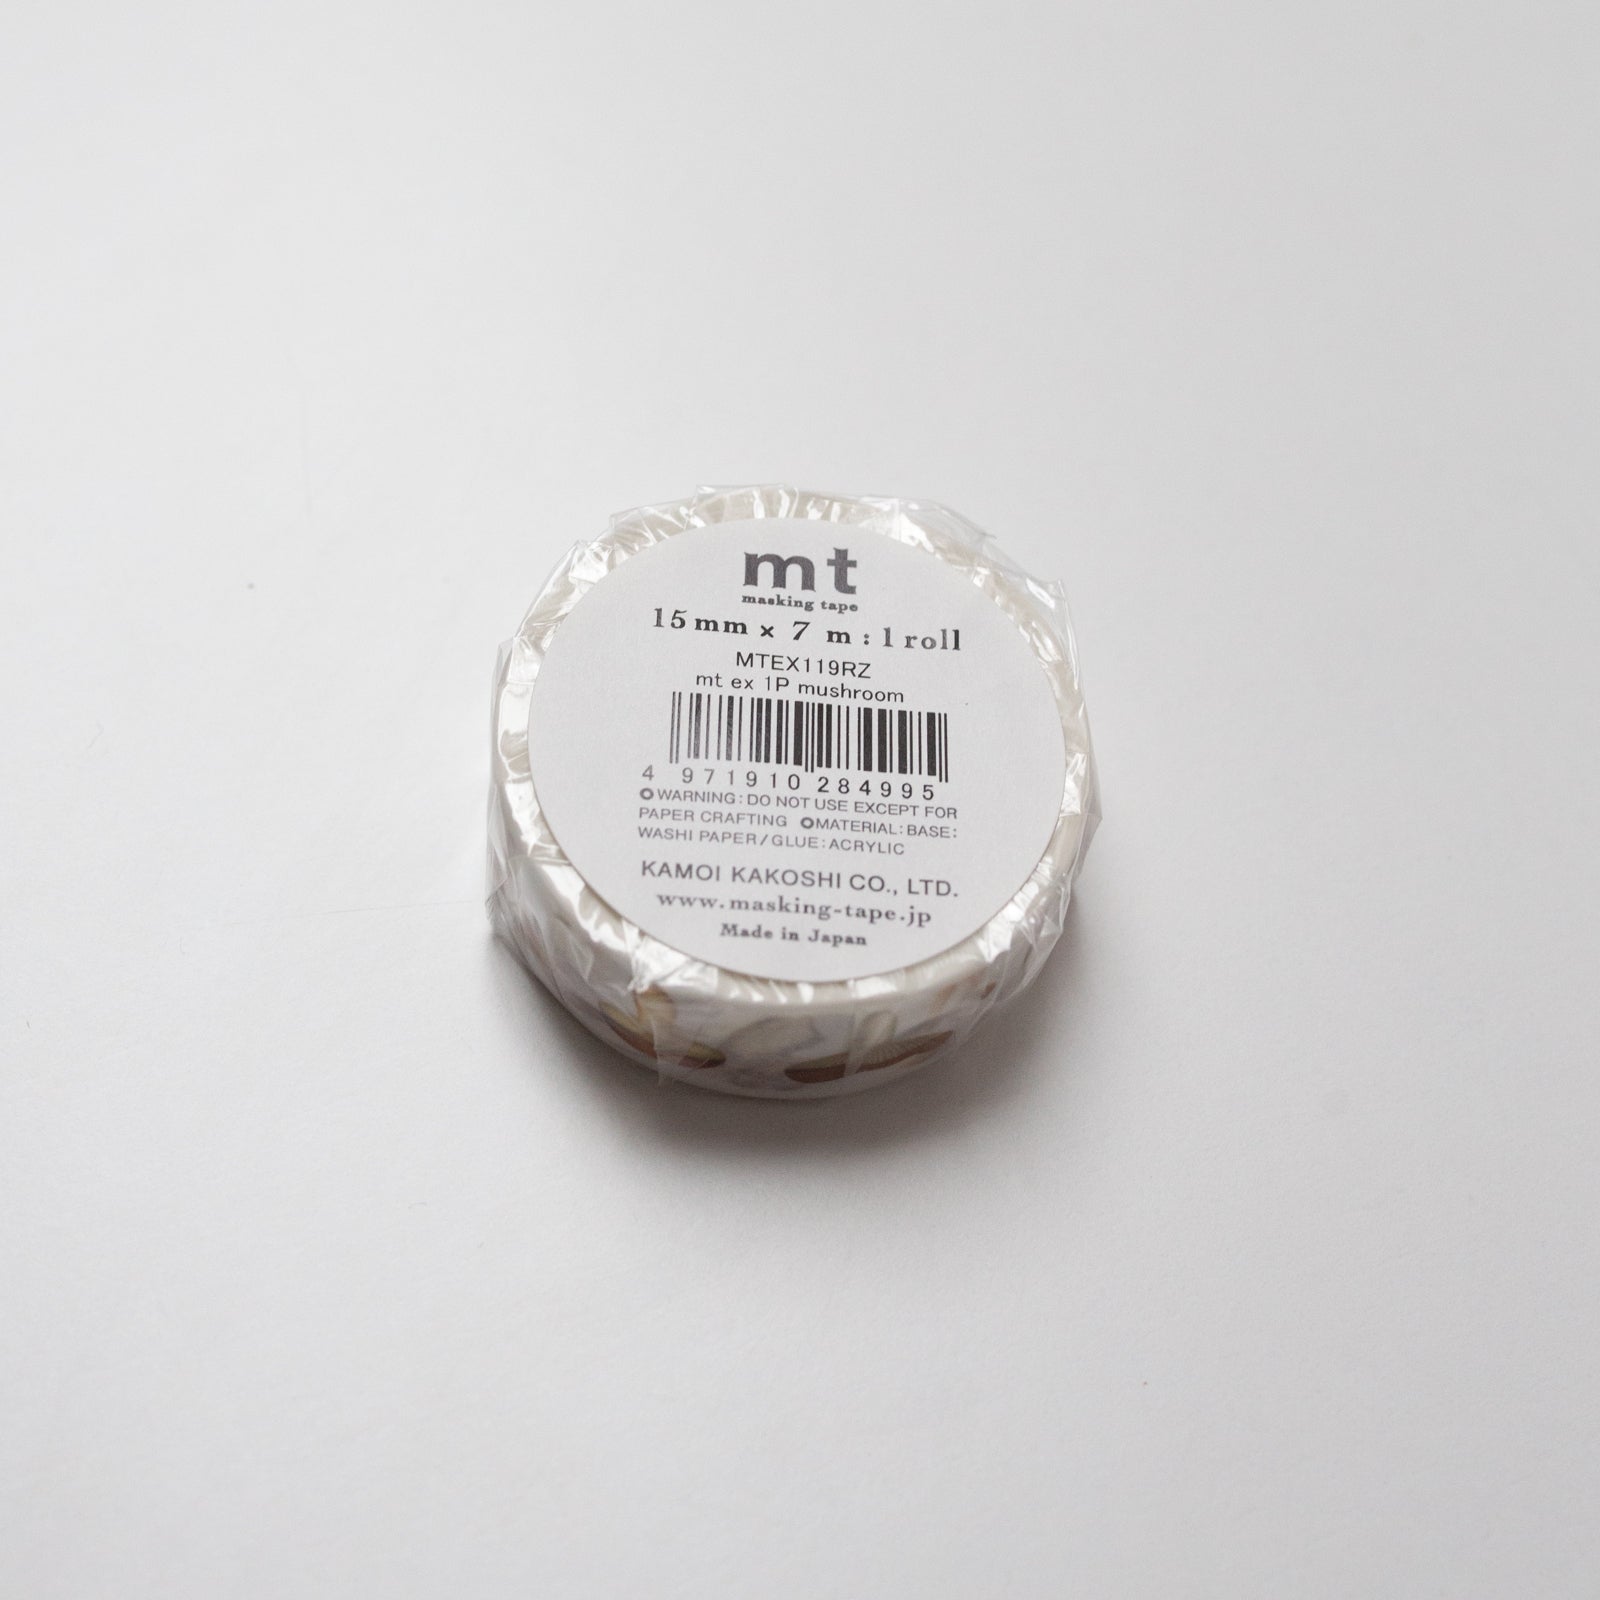 MT Masking tape Mushroom